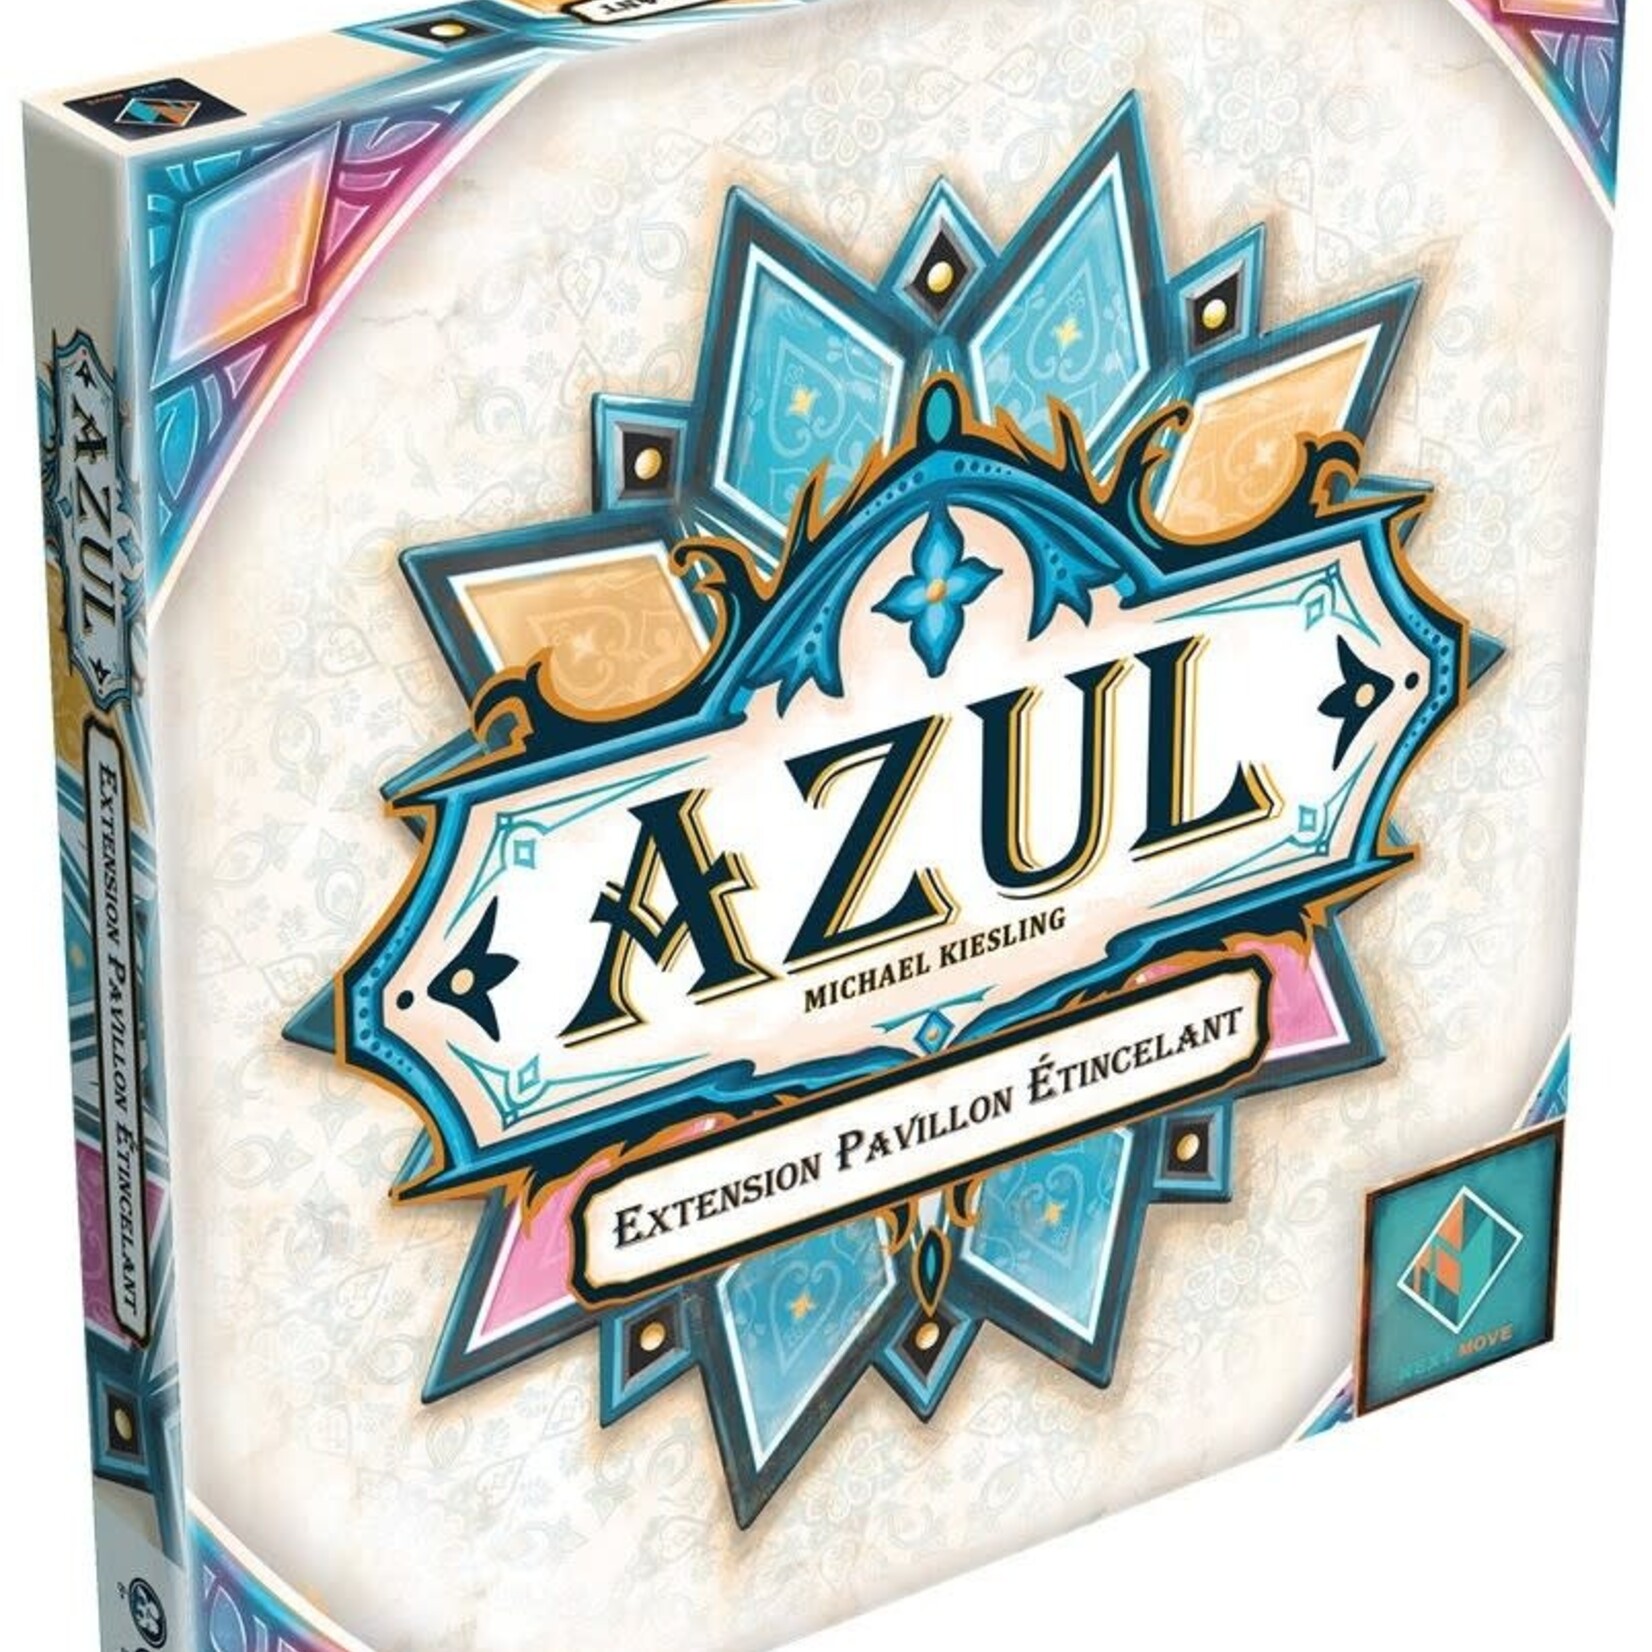 Next Move Games Azul - Extension Pavillon Étincellant